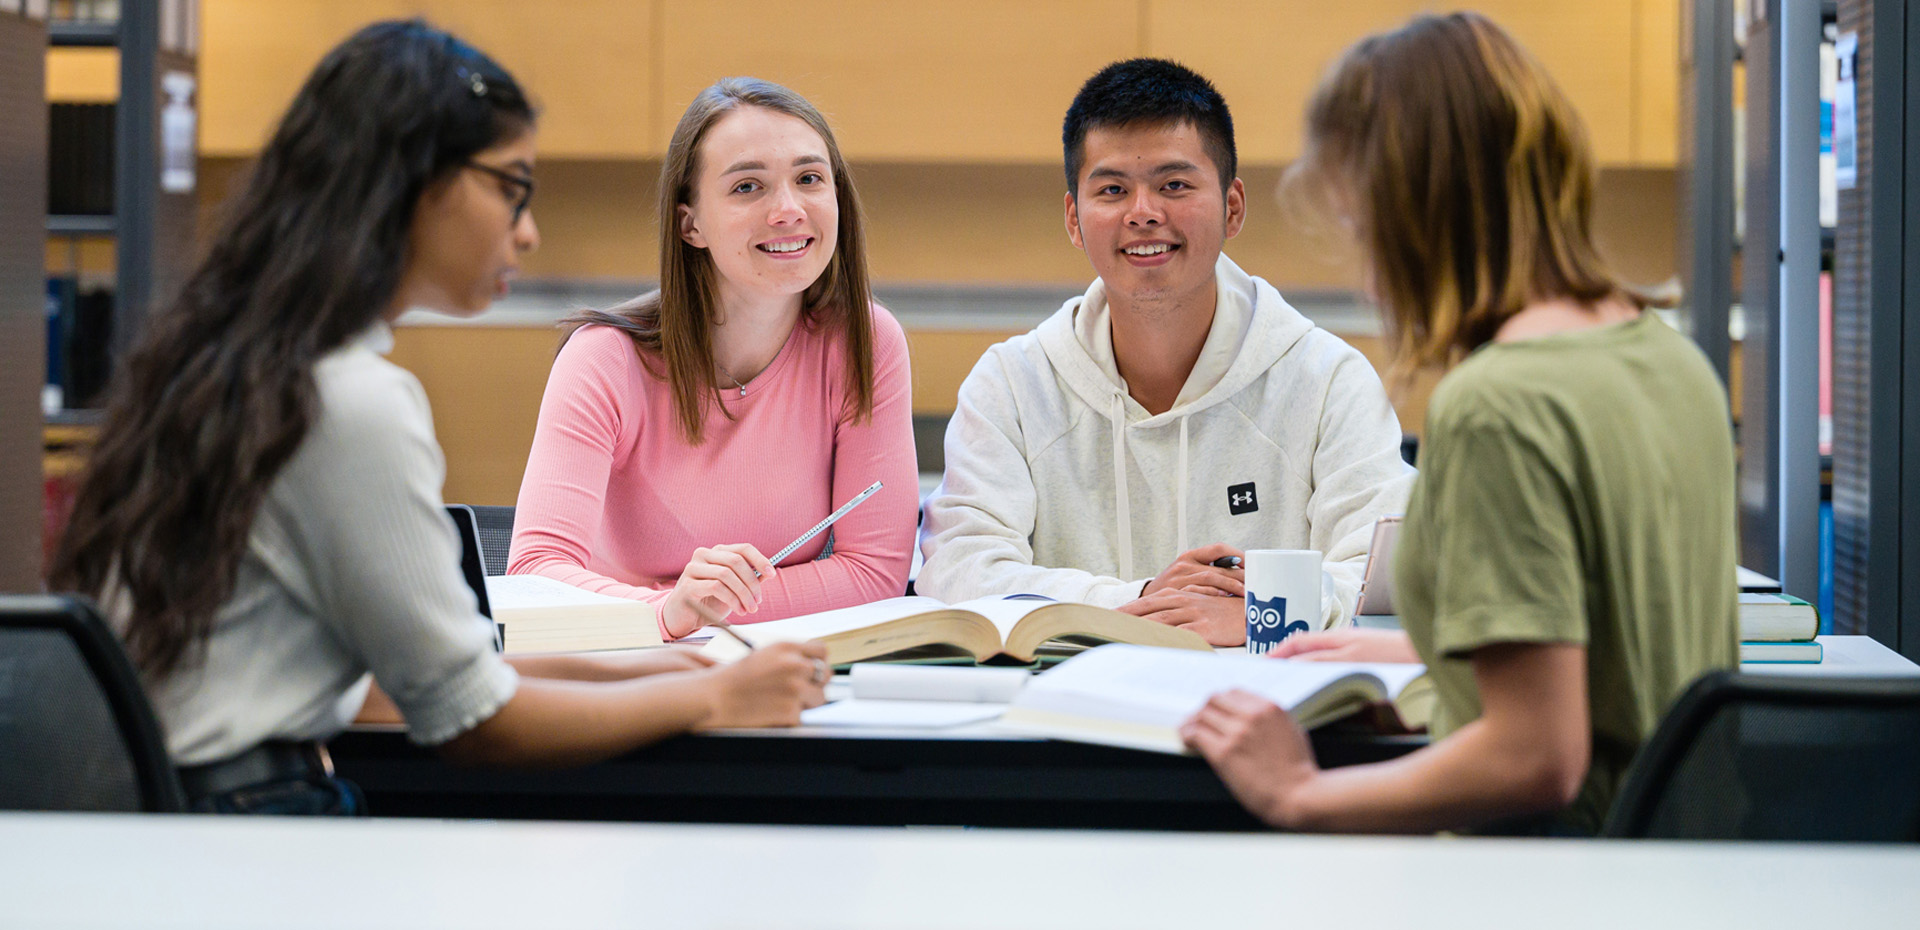 Vier Studierende lernen gemeinsam an einem Tisch in der Bibliothek.